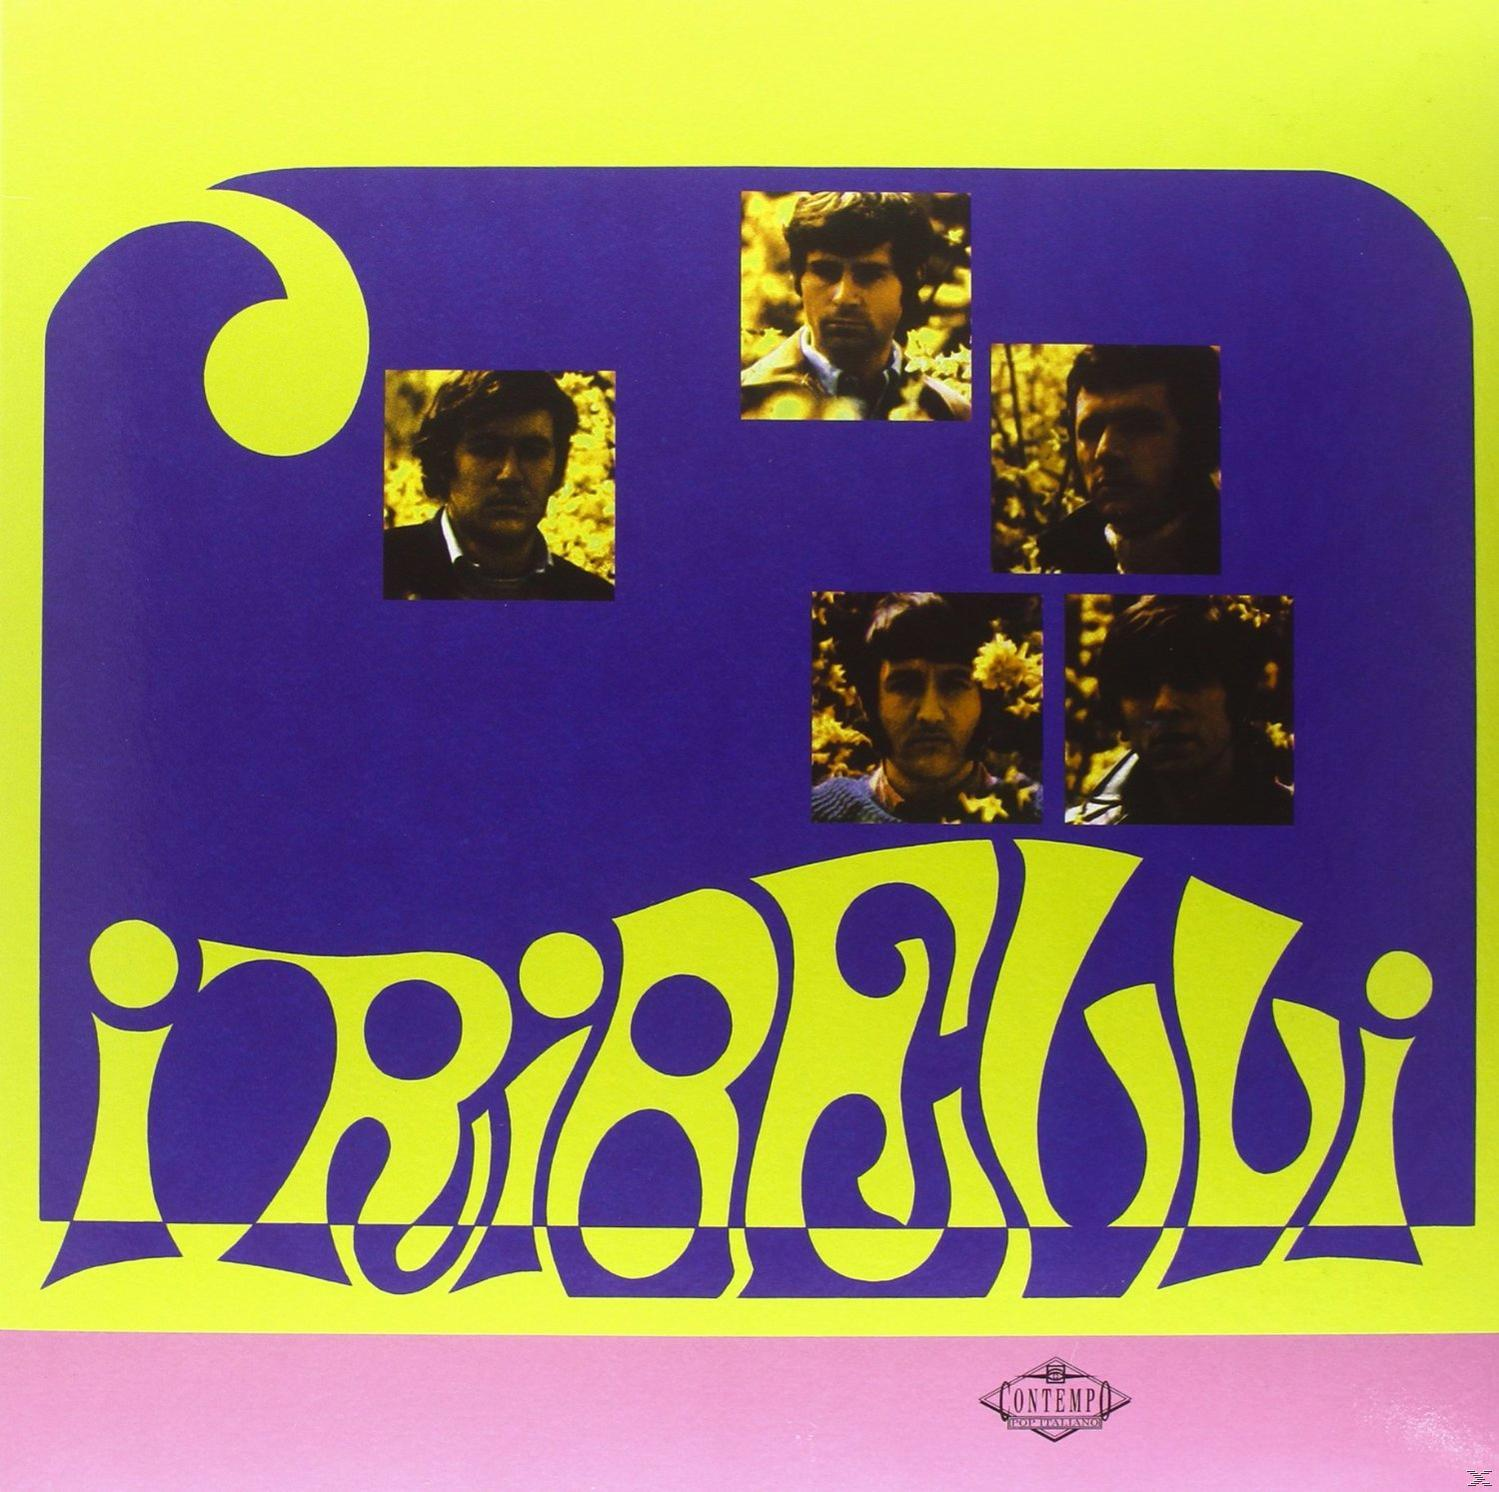 I Ribelli - - (Vinyl) Iribelli